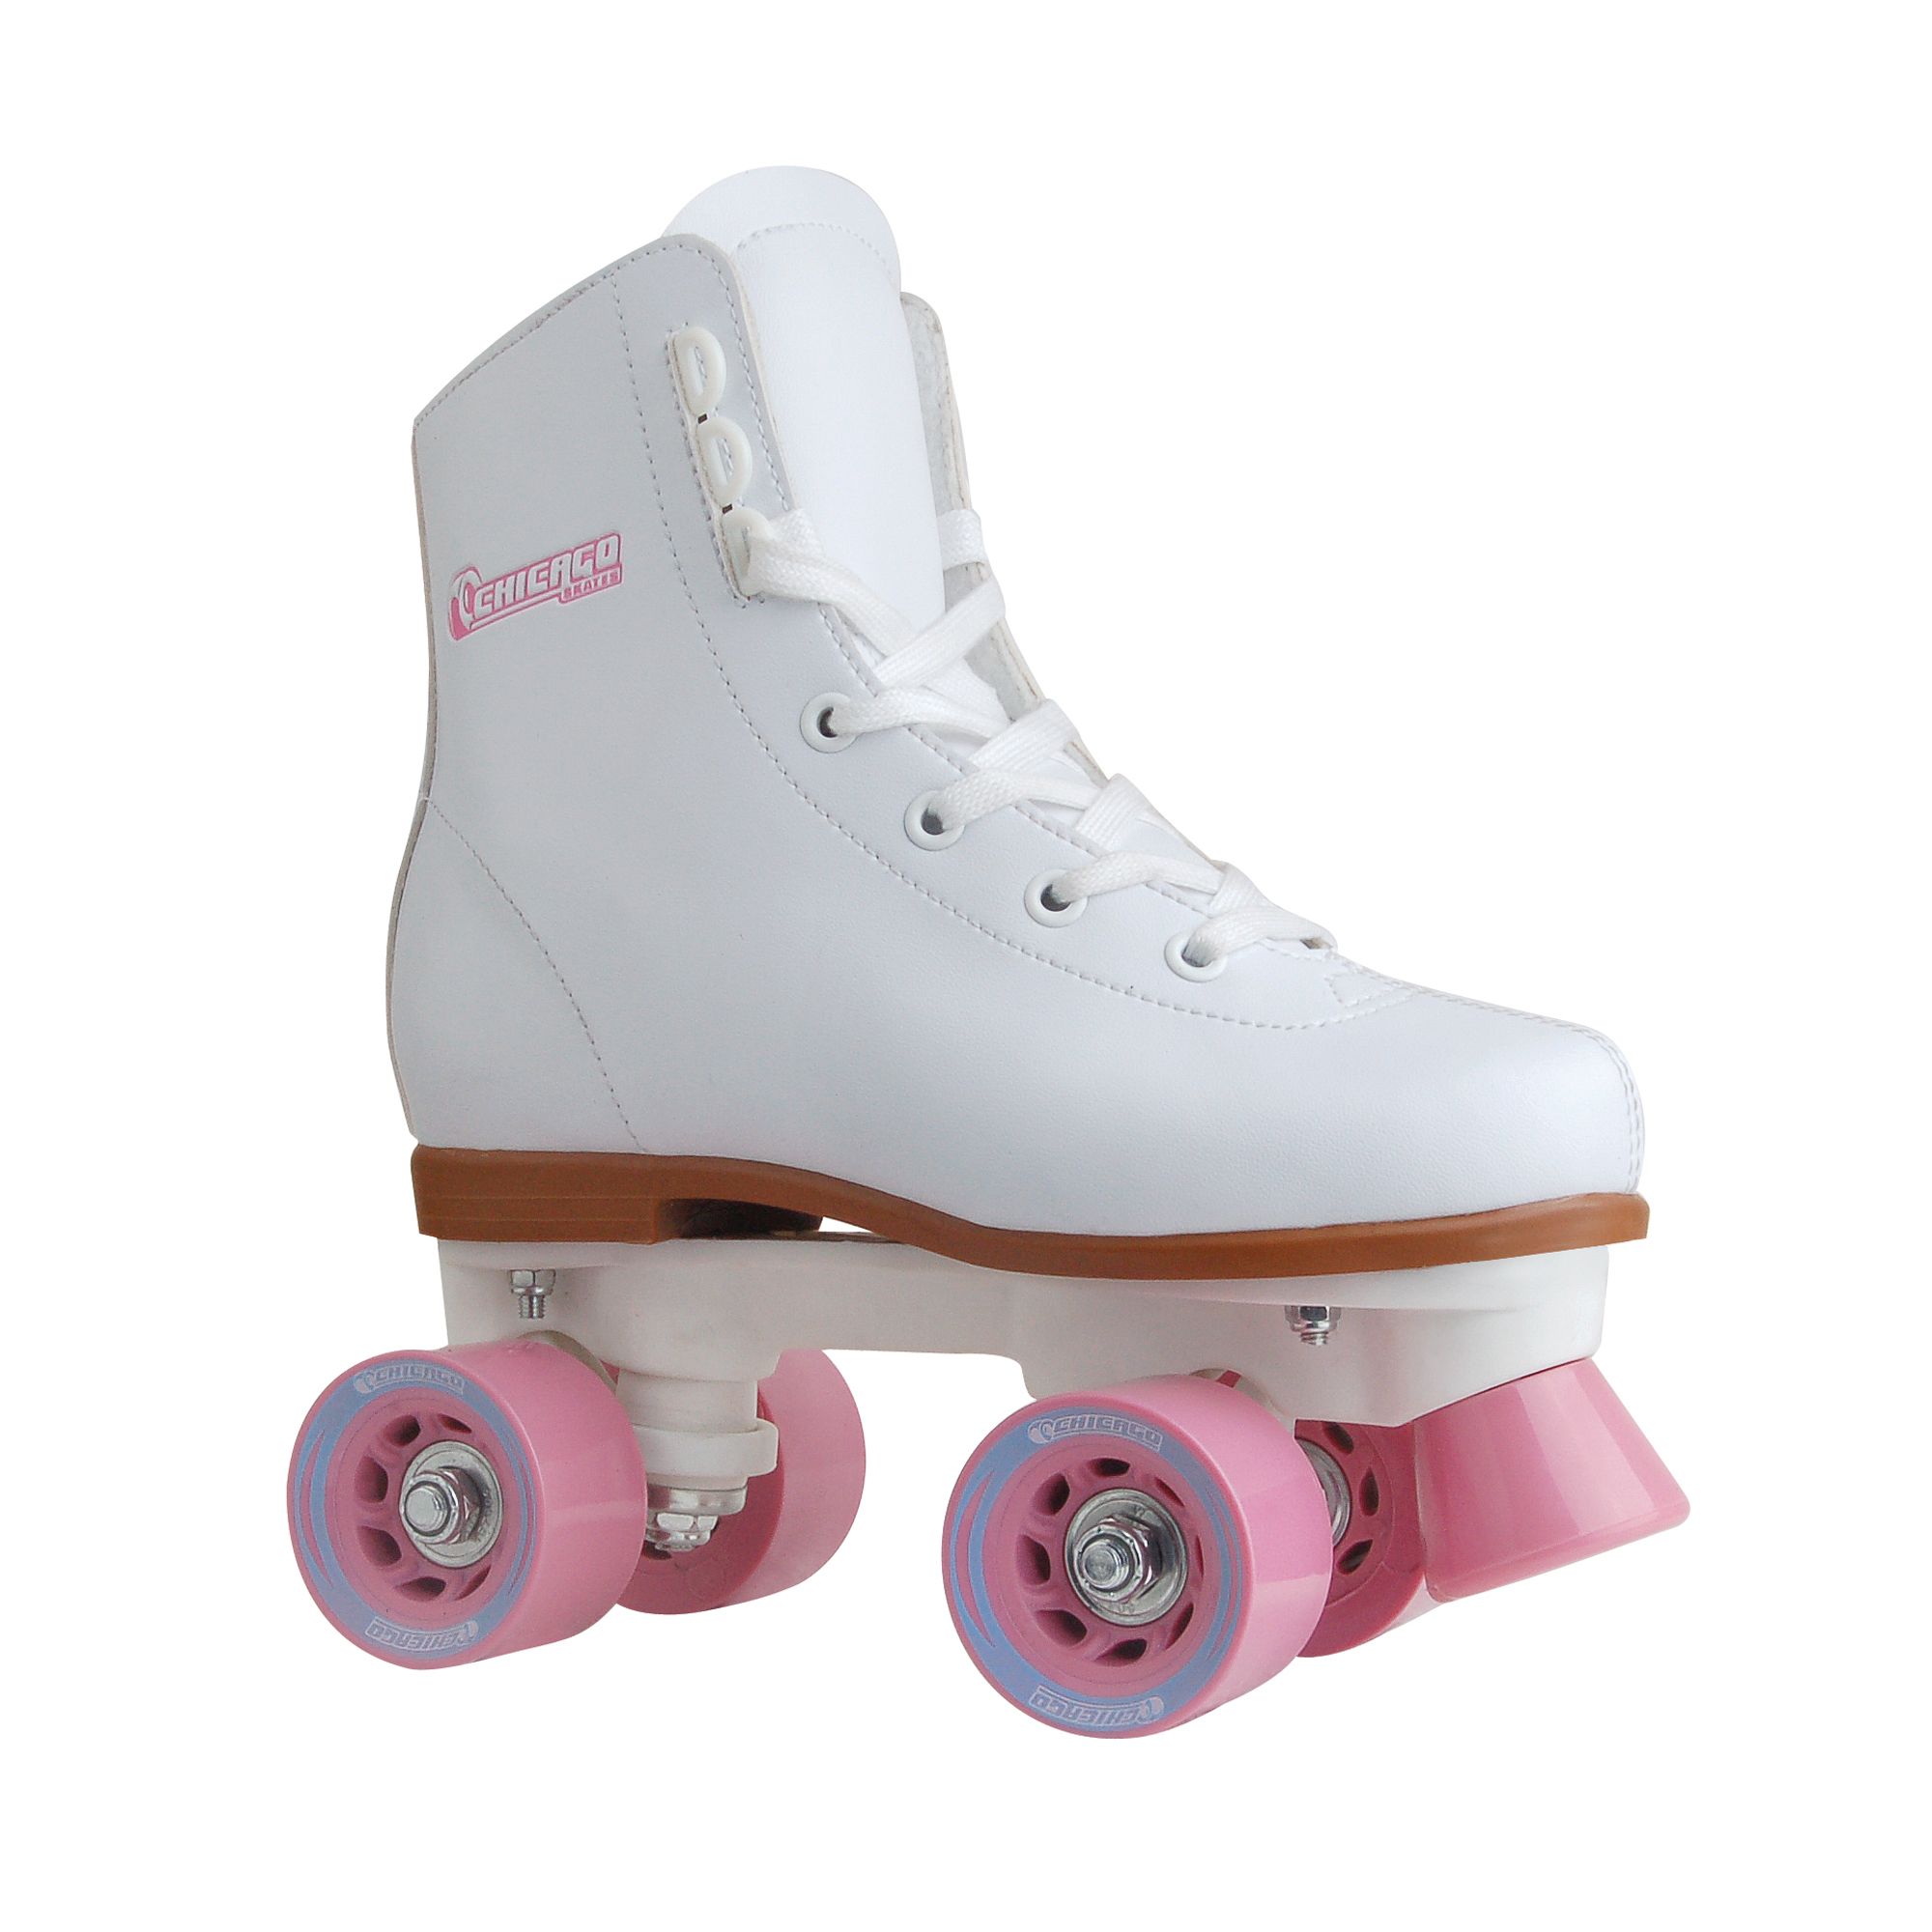 Chicago Girls Rink Skate White